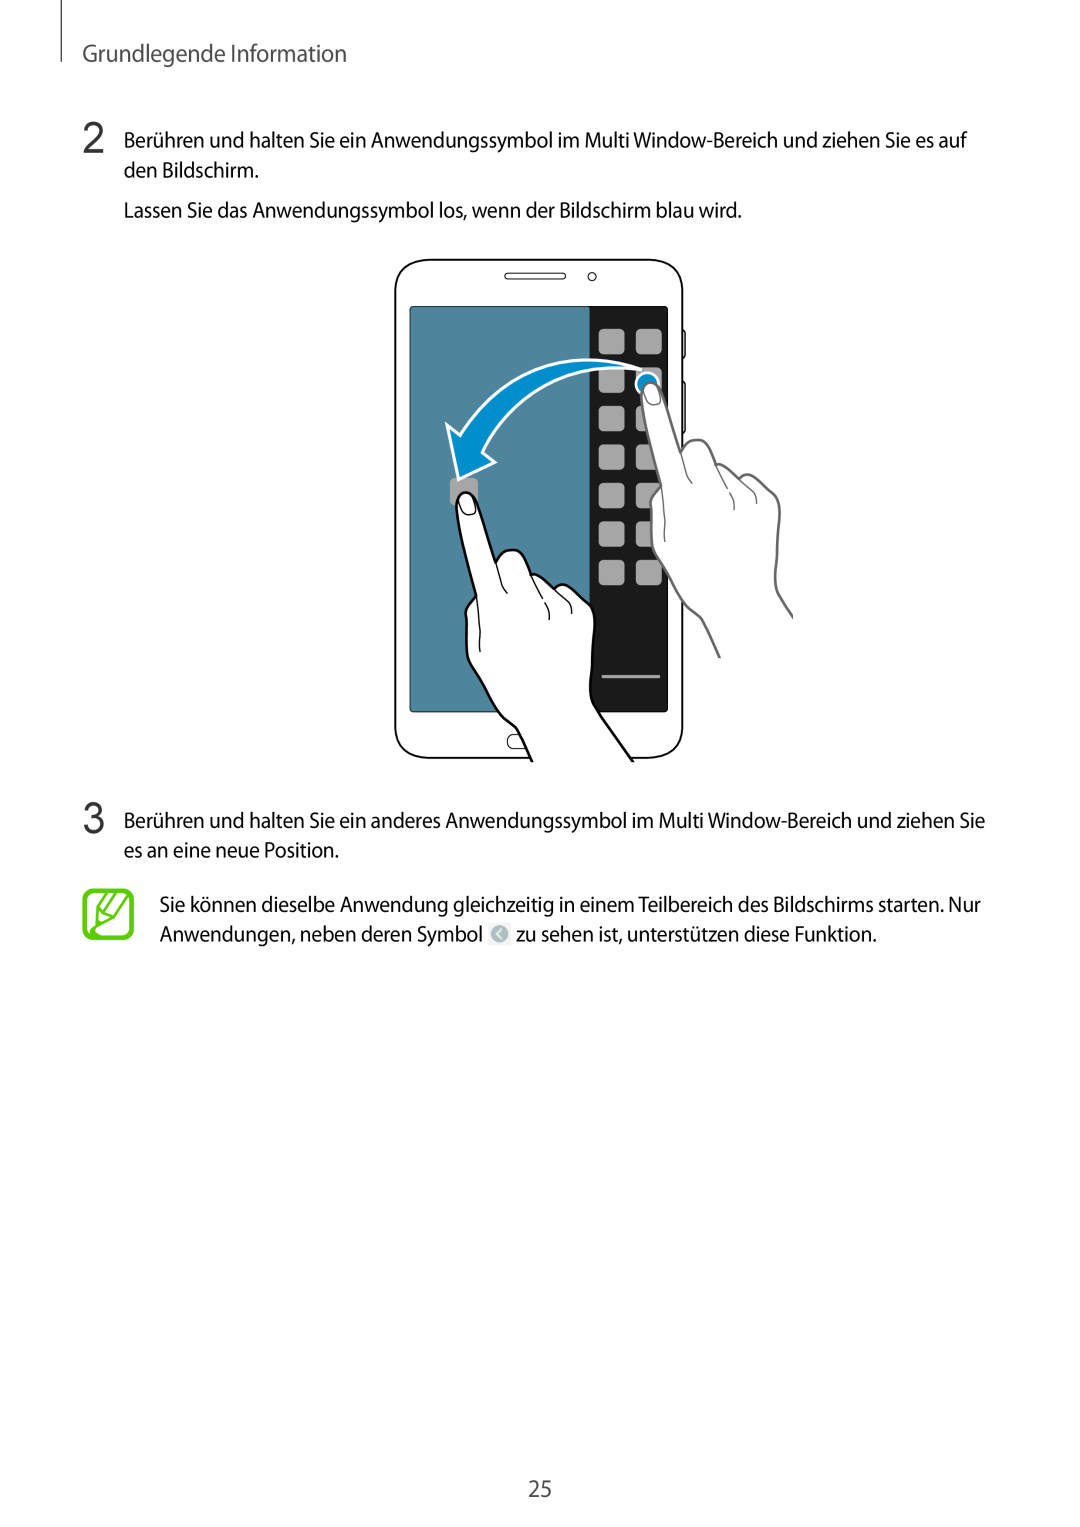 Samsung SM-T3150ZWAVD2 manual Grundlegende Information, Lassen Sie das Anwendungssymbol los, wenn der Bildschirm blau wird 